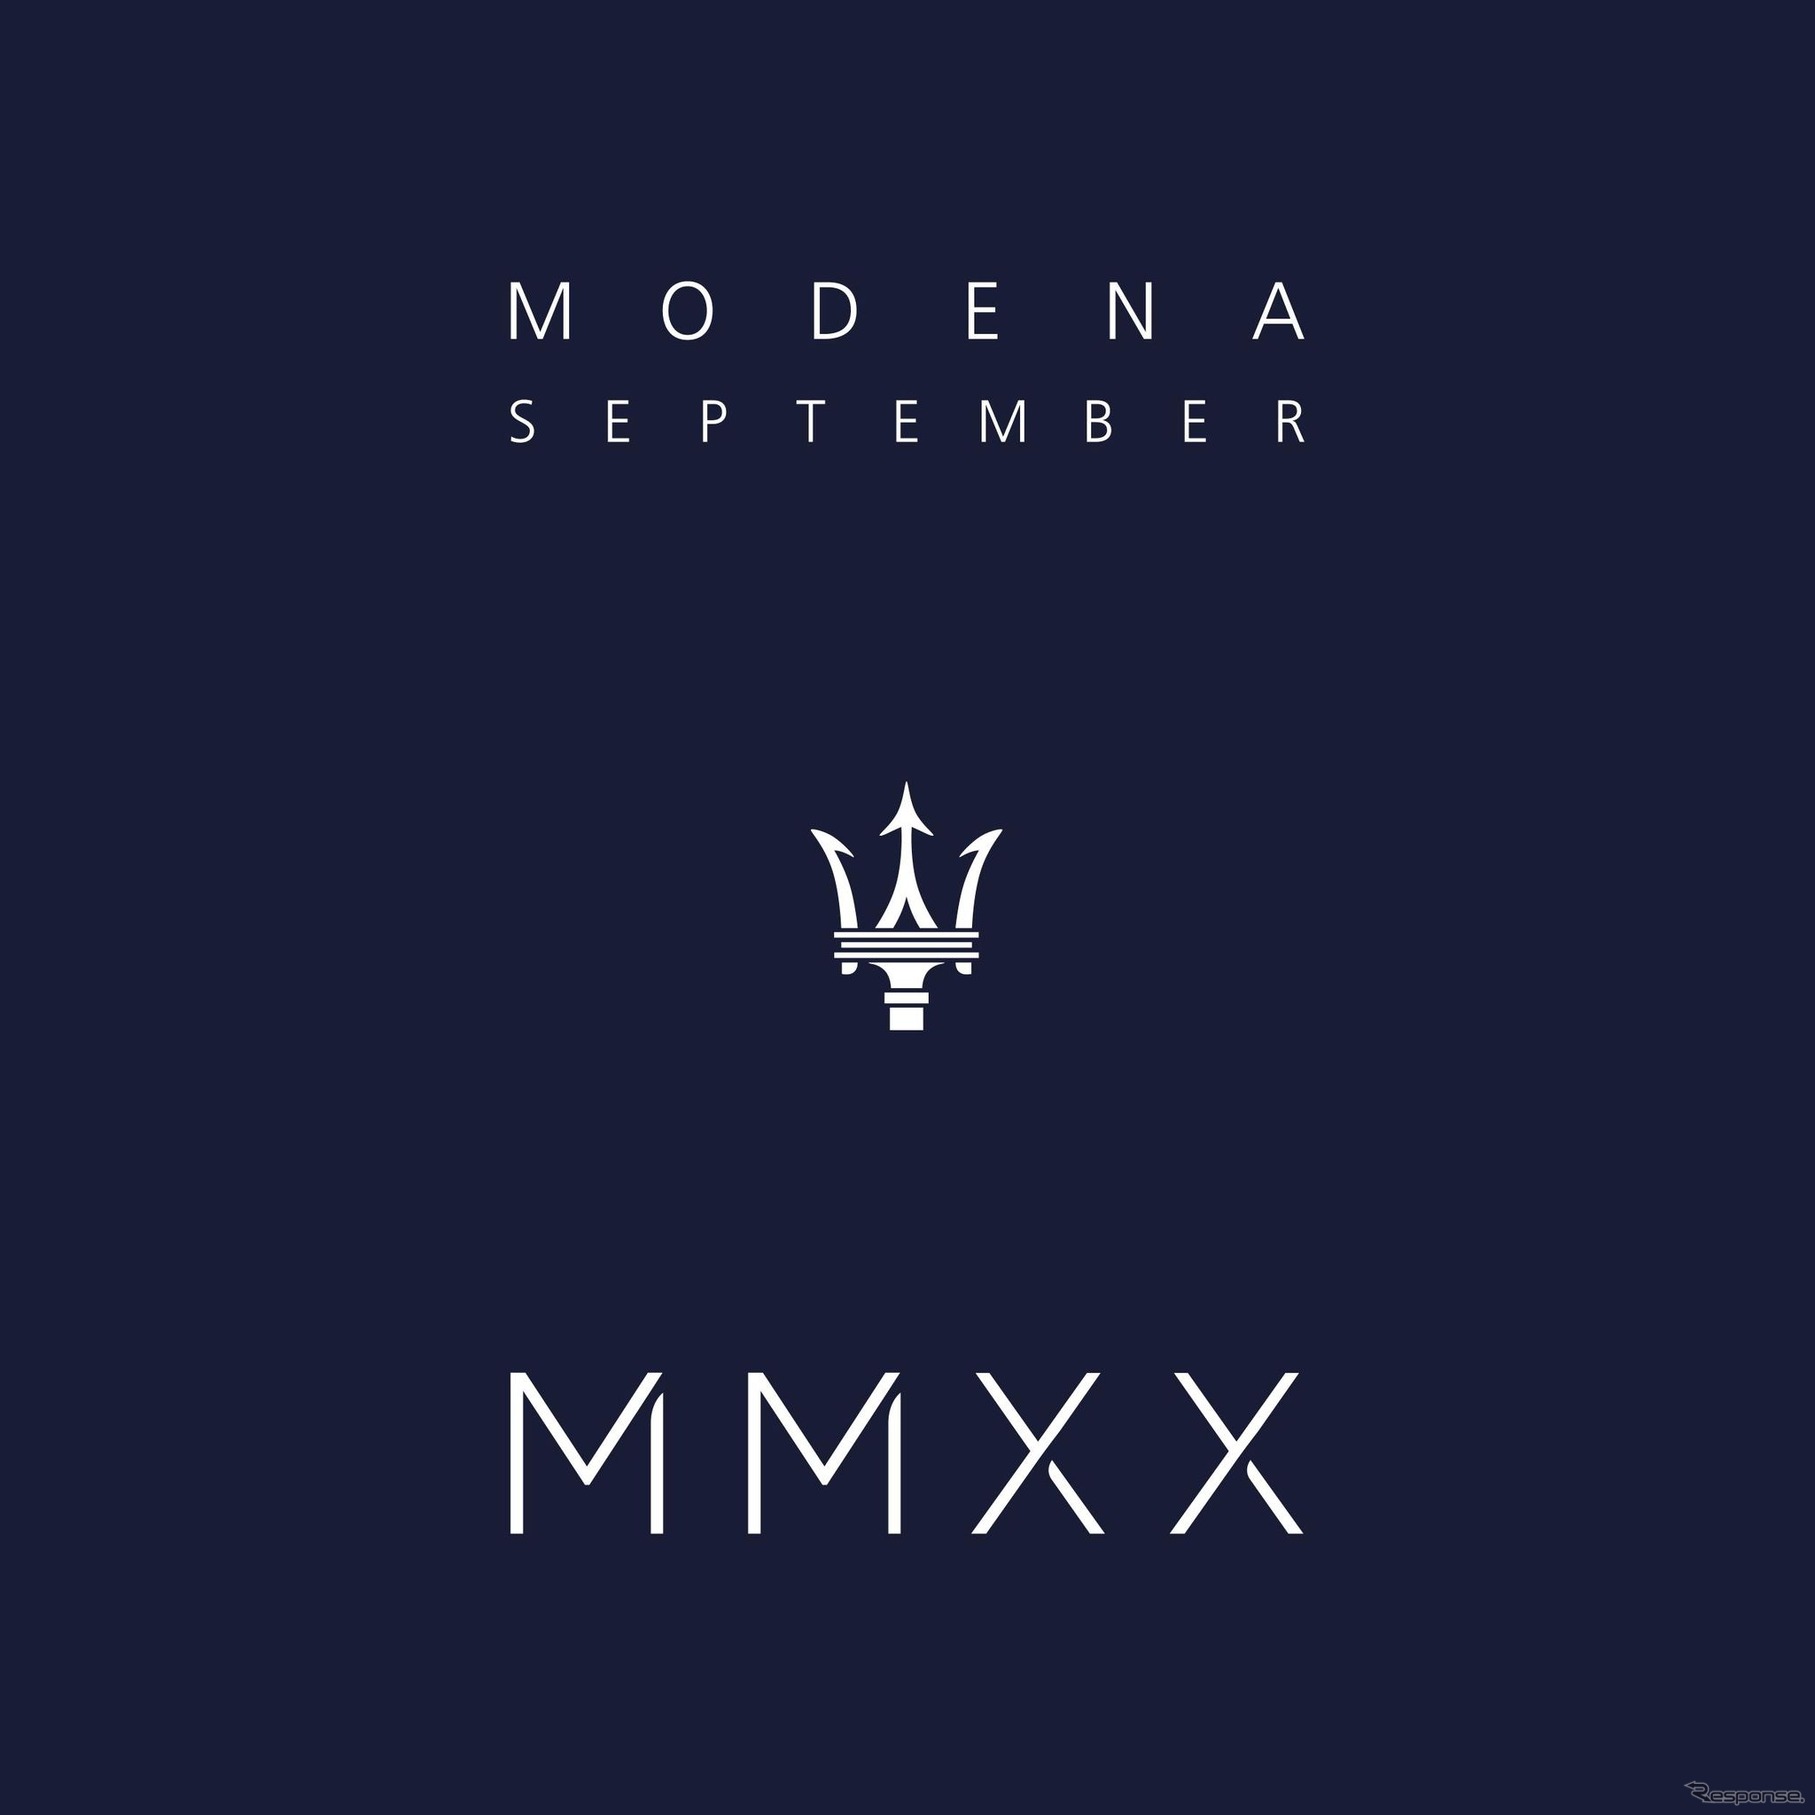 ブランドのリローンチイベント 「MMXX: The Way Forward」 のロゴ